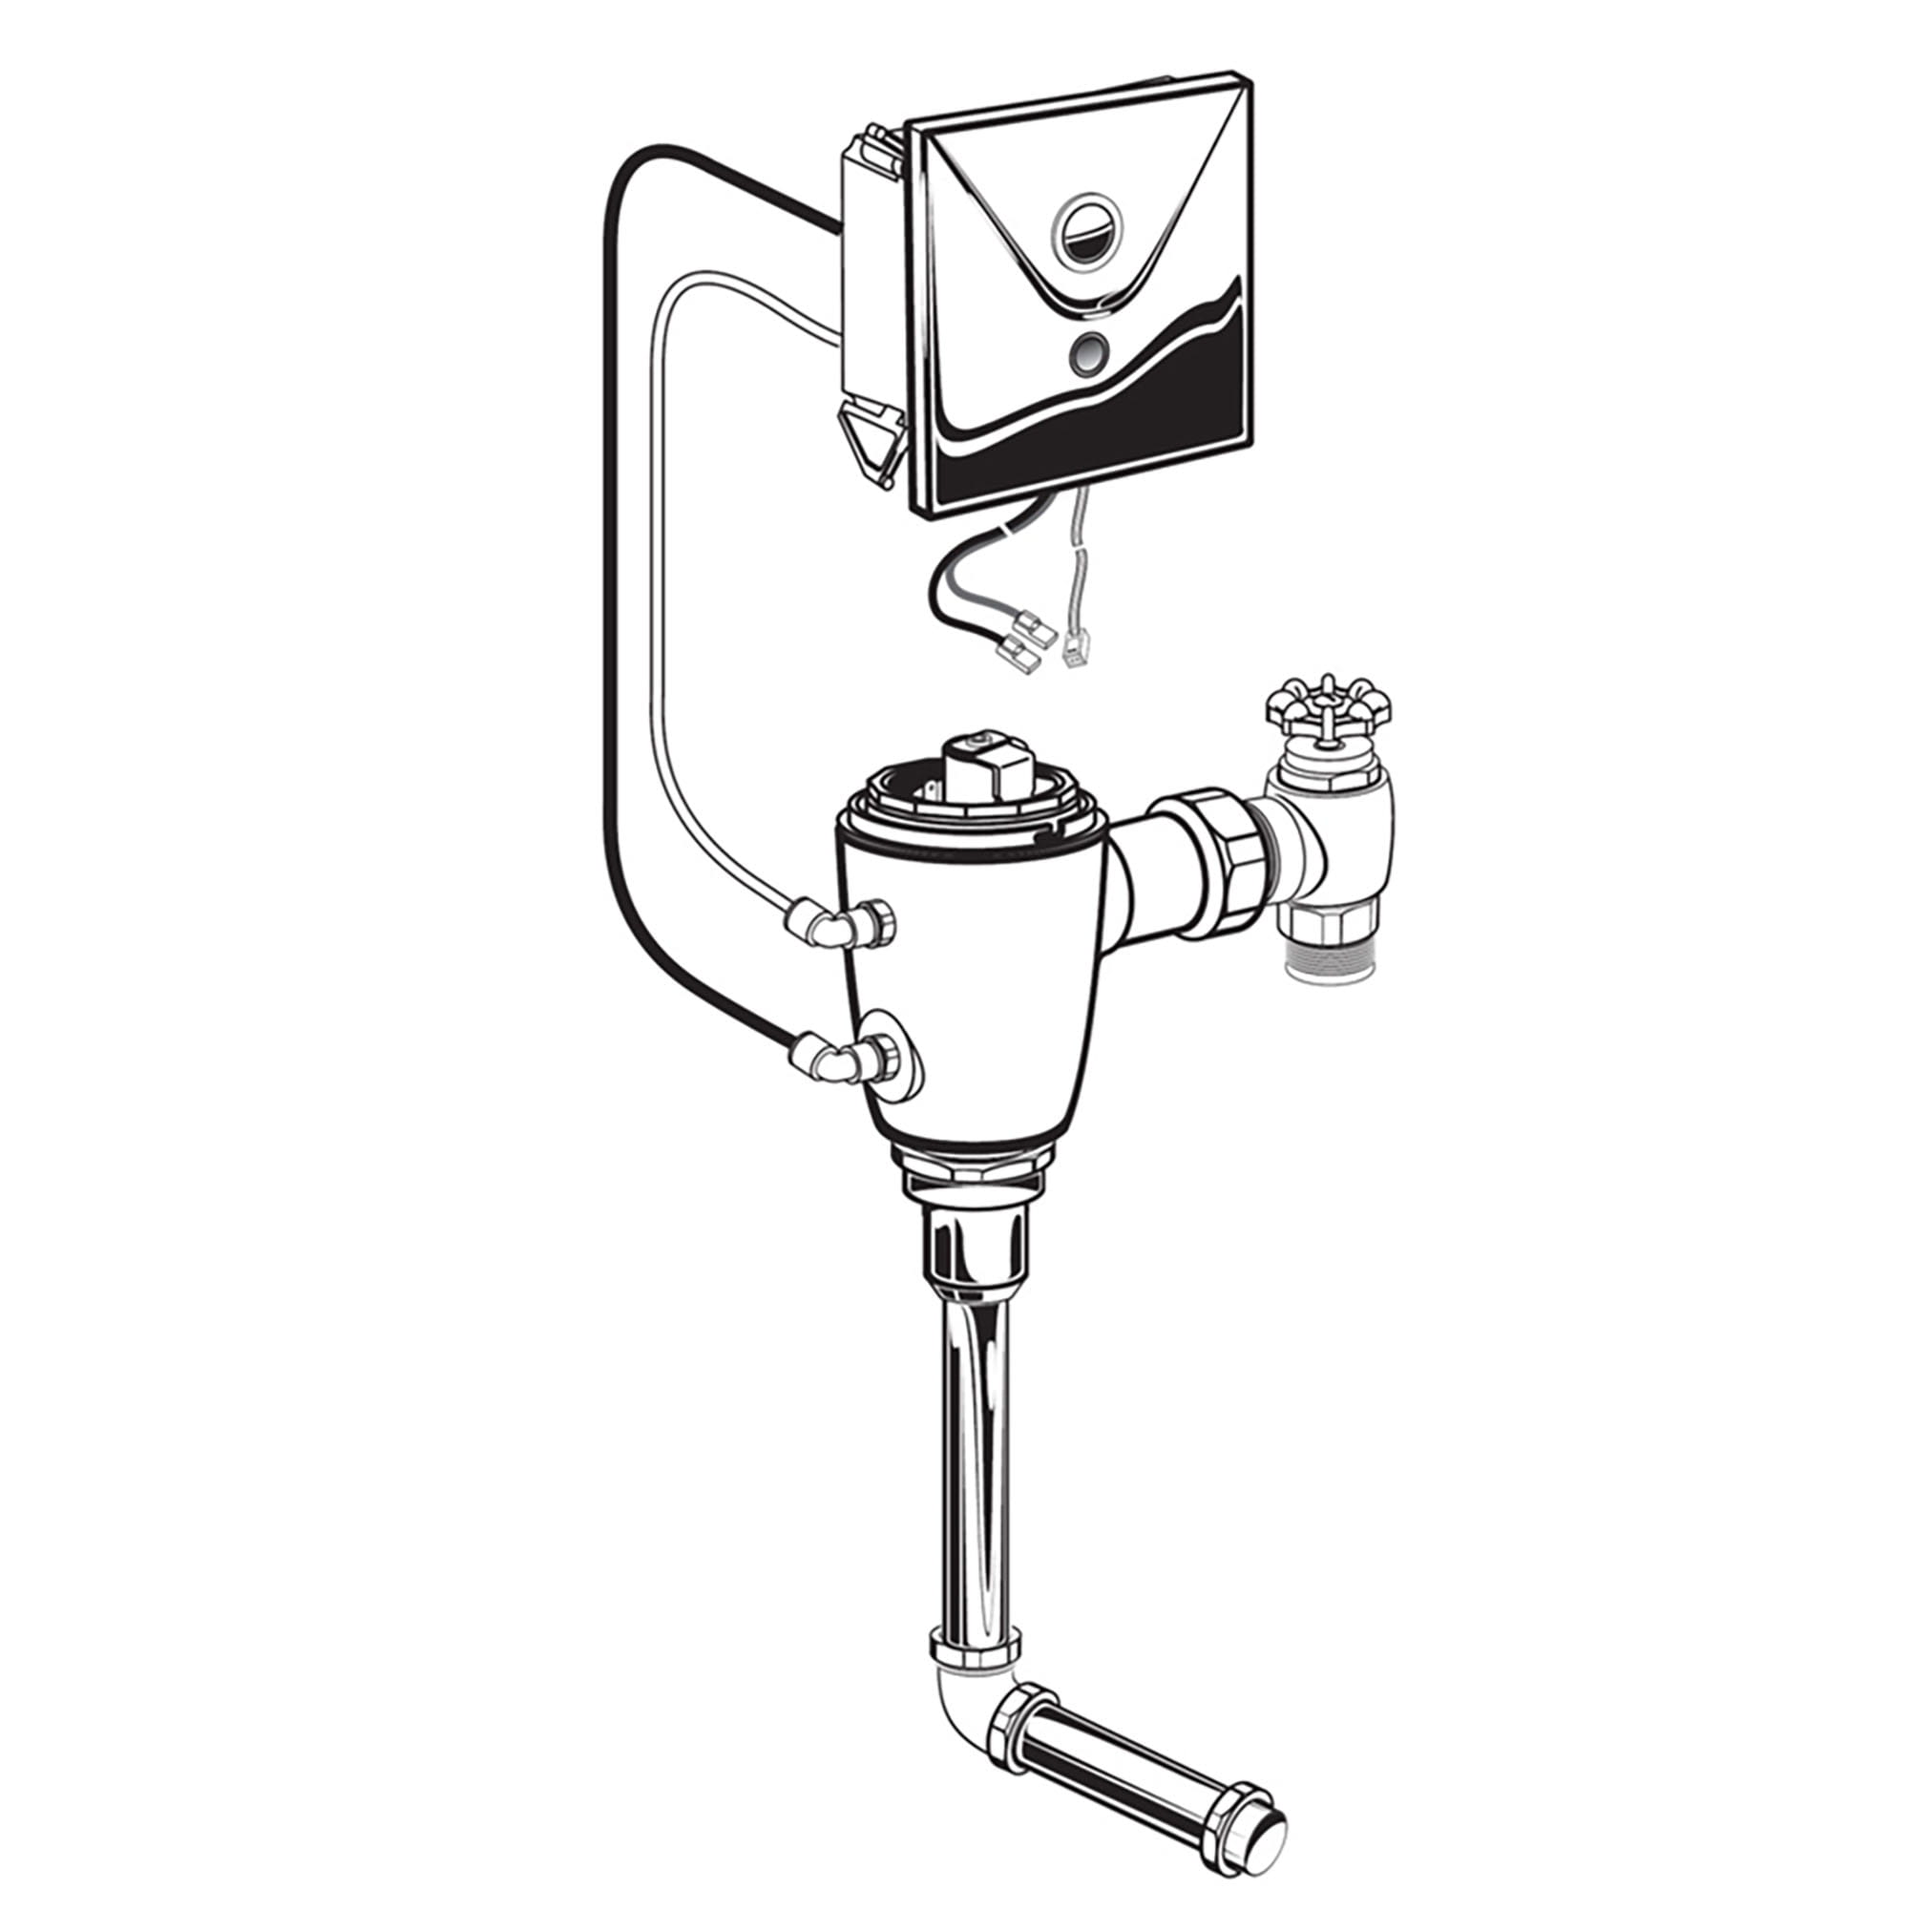 Ultima™ Selectronic - robinet de chasse dissimulé pour urinoir, modèle de base, de type à piston, 0,125 gpc/0,5 lpc